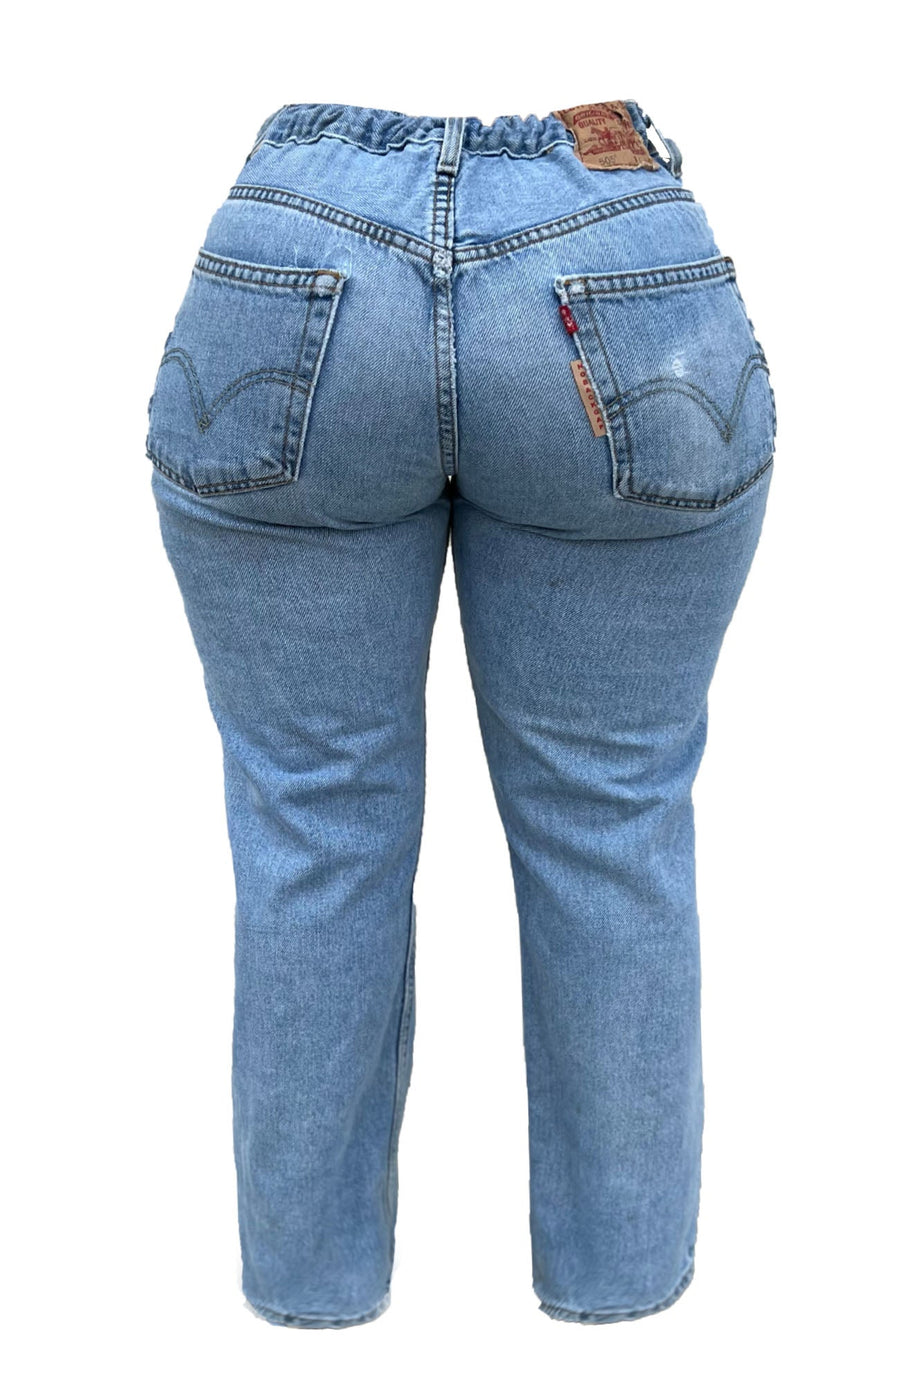 No Back Gap Jean ♻️